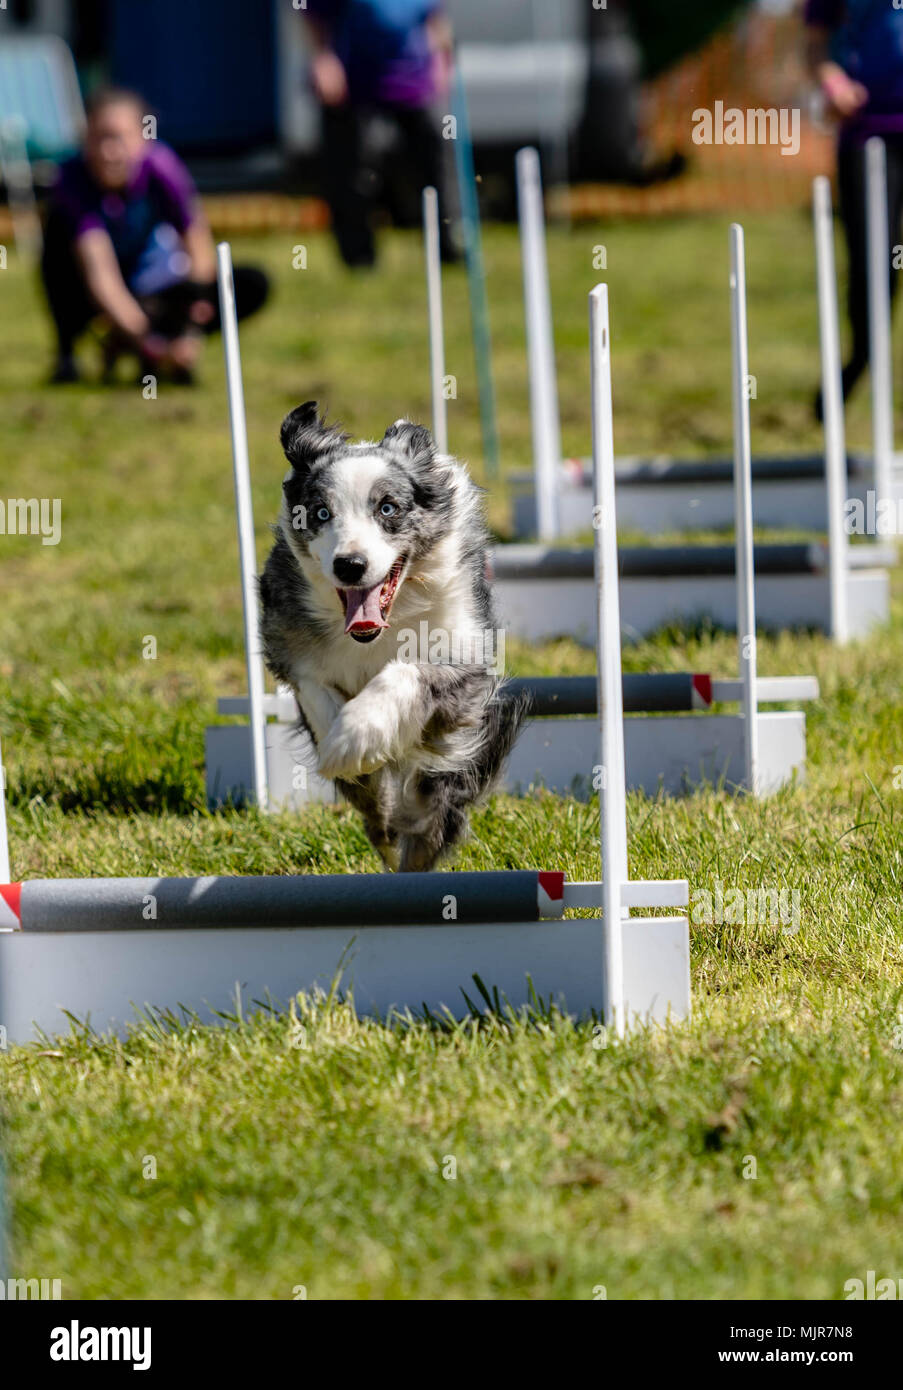 Brentwood, Essex, 6 mai 2018 Tout sur les chiens montrent à Brentwood, Essex, - chien sur l'agilité course Credit Ian Davidson/Alamy Live News Banque D'Images